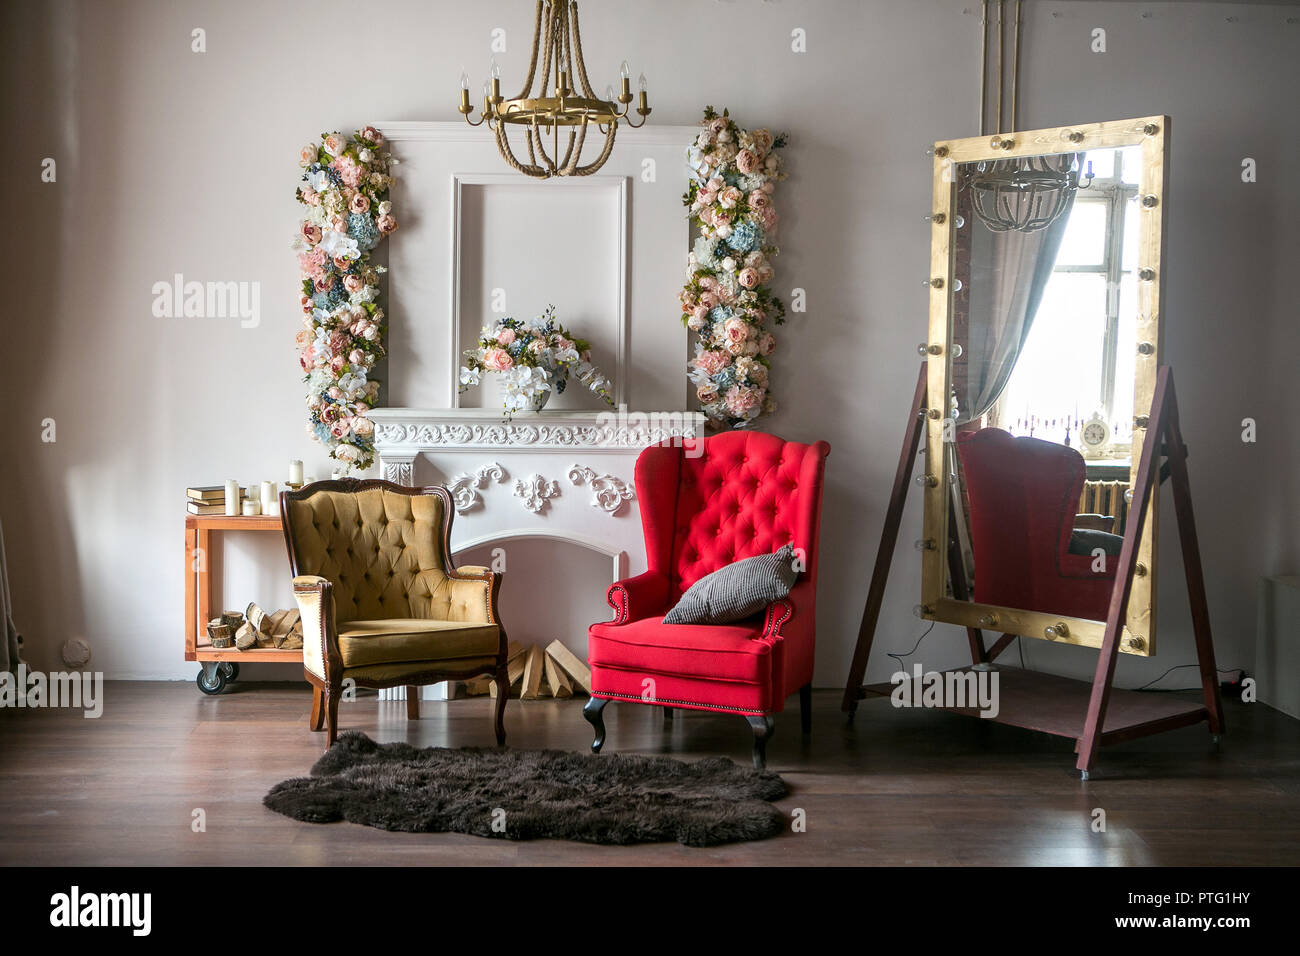 Bright stile loft a camera con una poltrona rossa, una poltrona marrone, un caminetto bianco con fiori, un grande specchio con lampadine e un lampadario Foto Stock